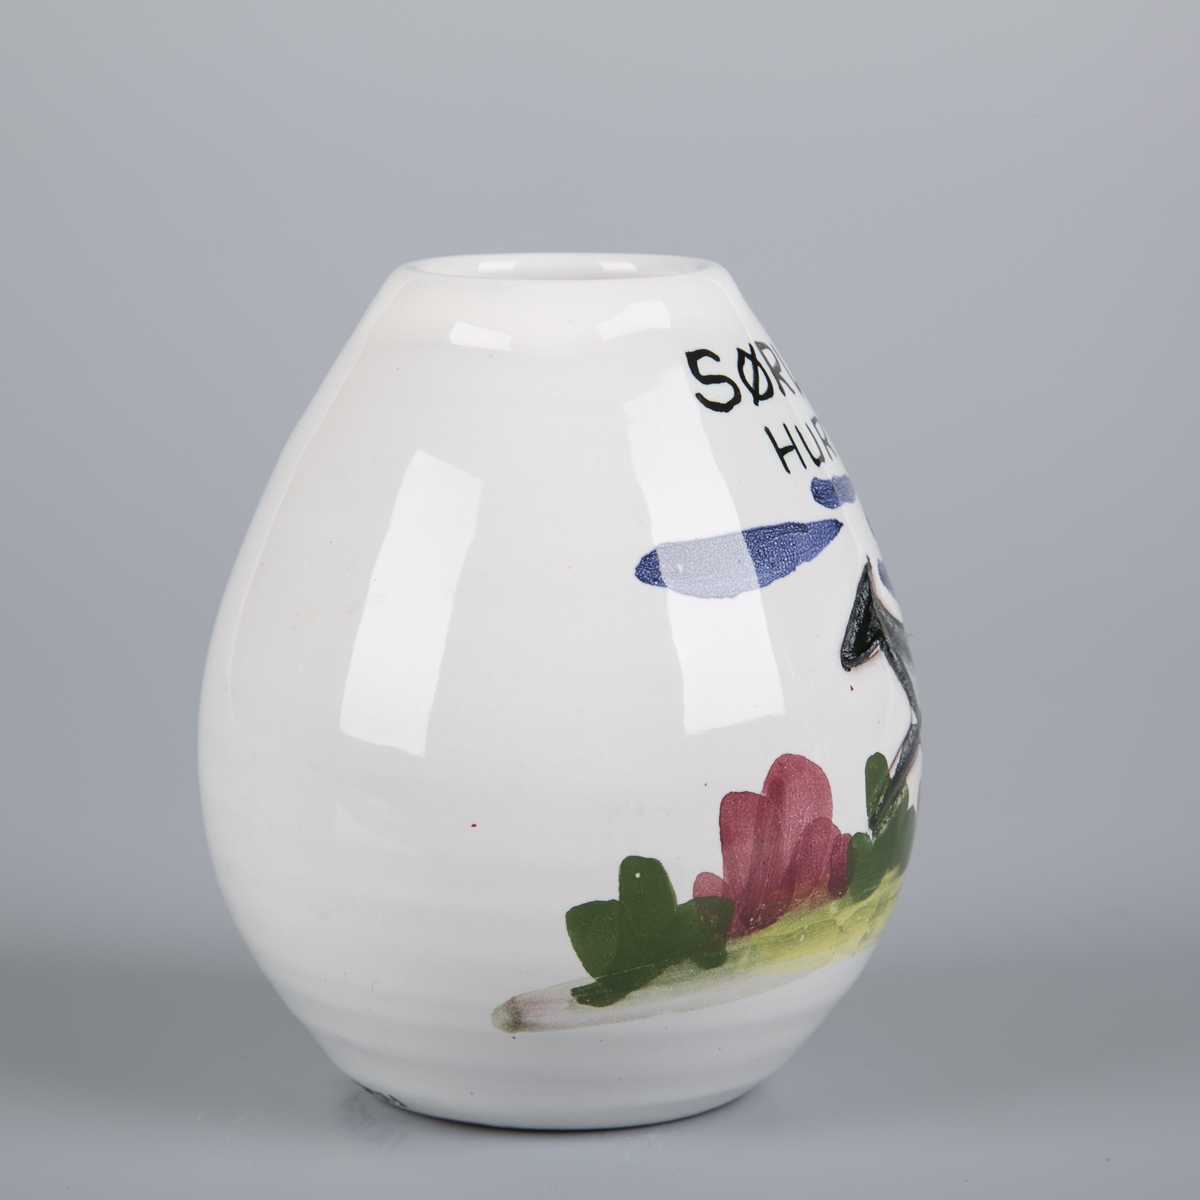 Liten eggeformet vase med tegning av hund som løper i landskap.